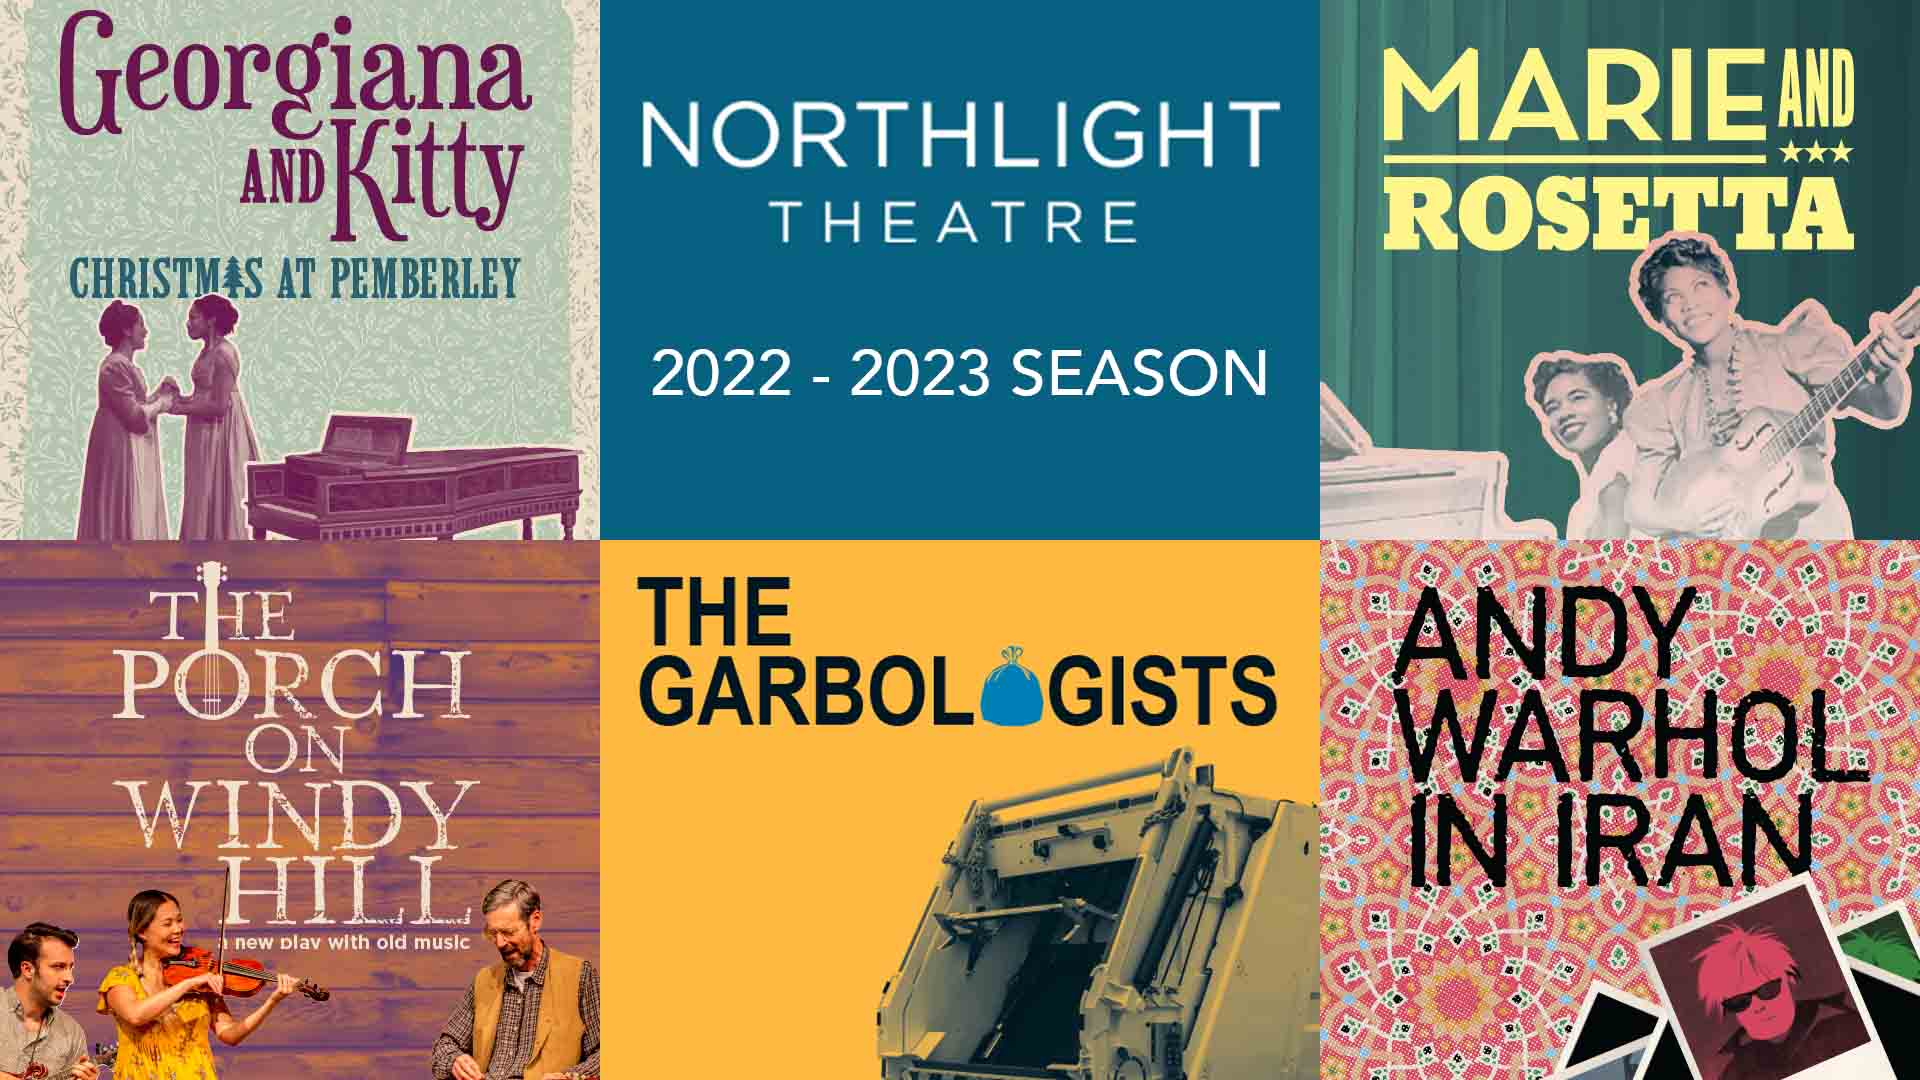 Northlight Theatre In Skokie, Illinois Announces Its 2022-23 Season